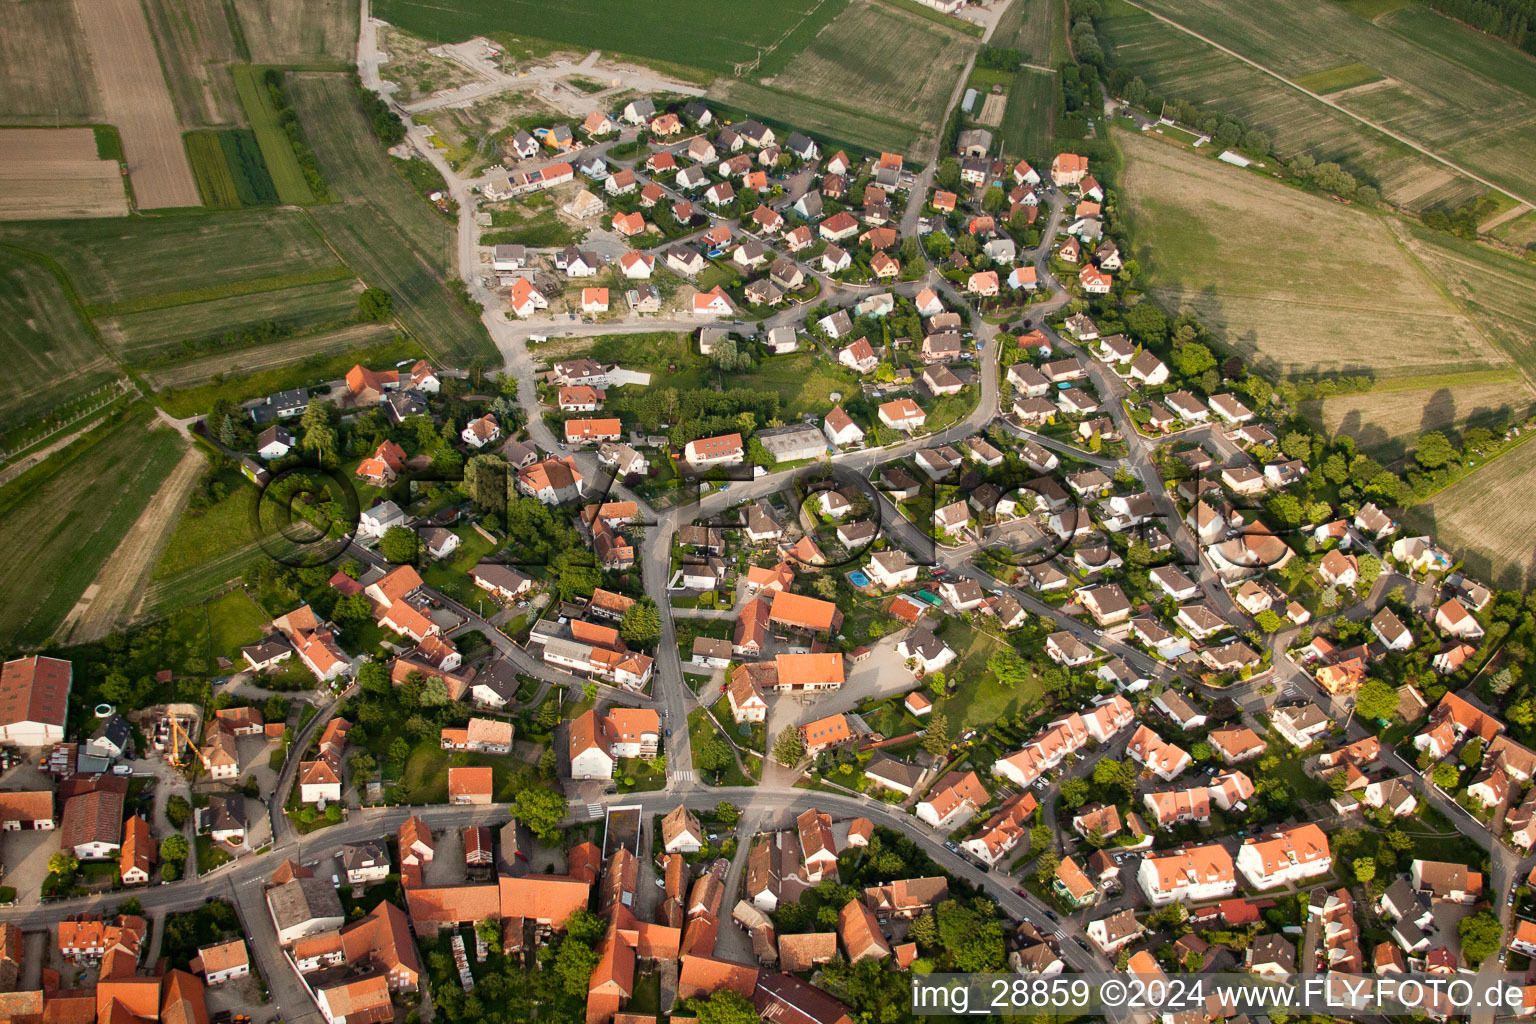 Settlement area in Kilstett in Grand Est, France